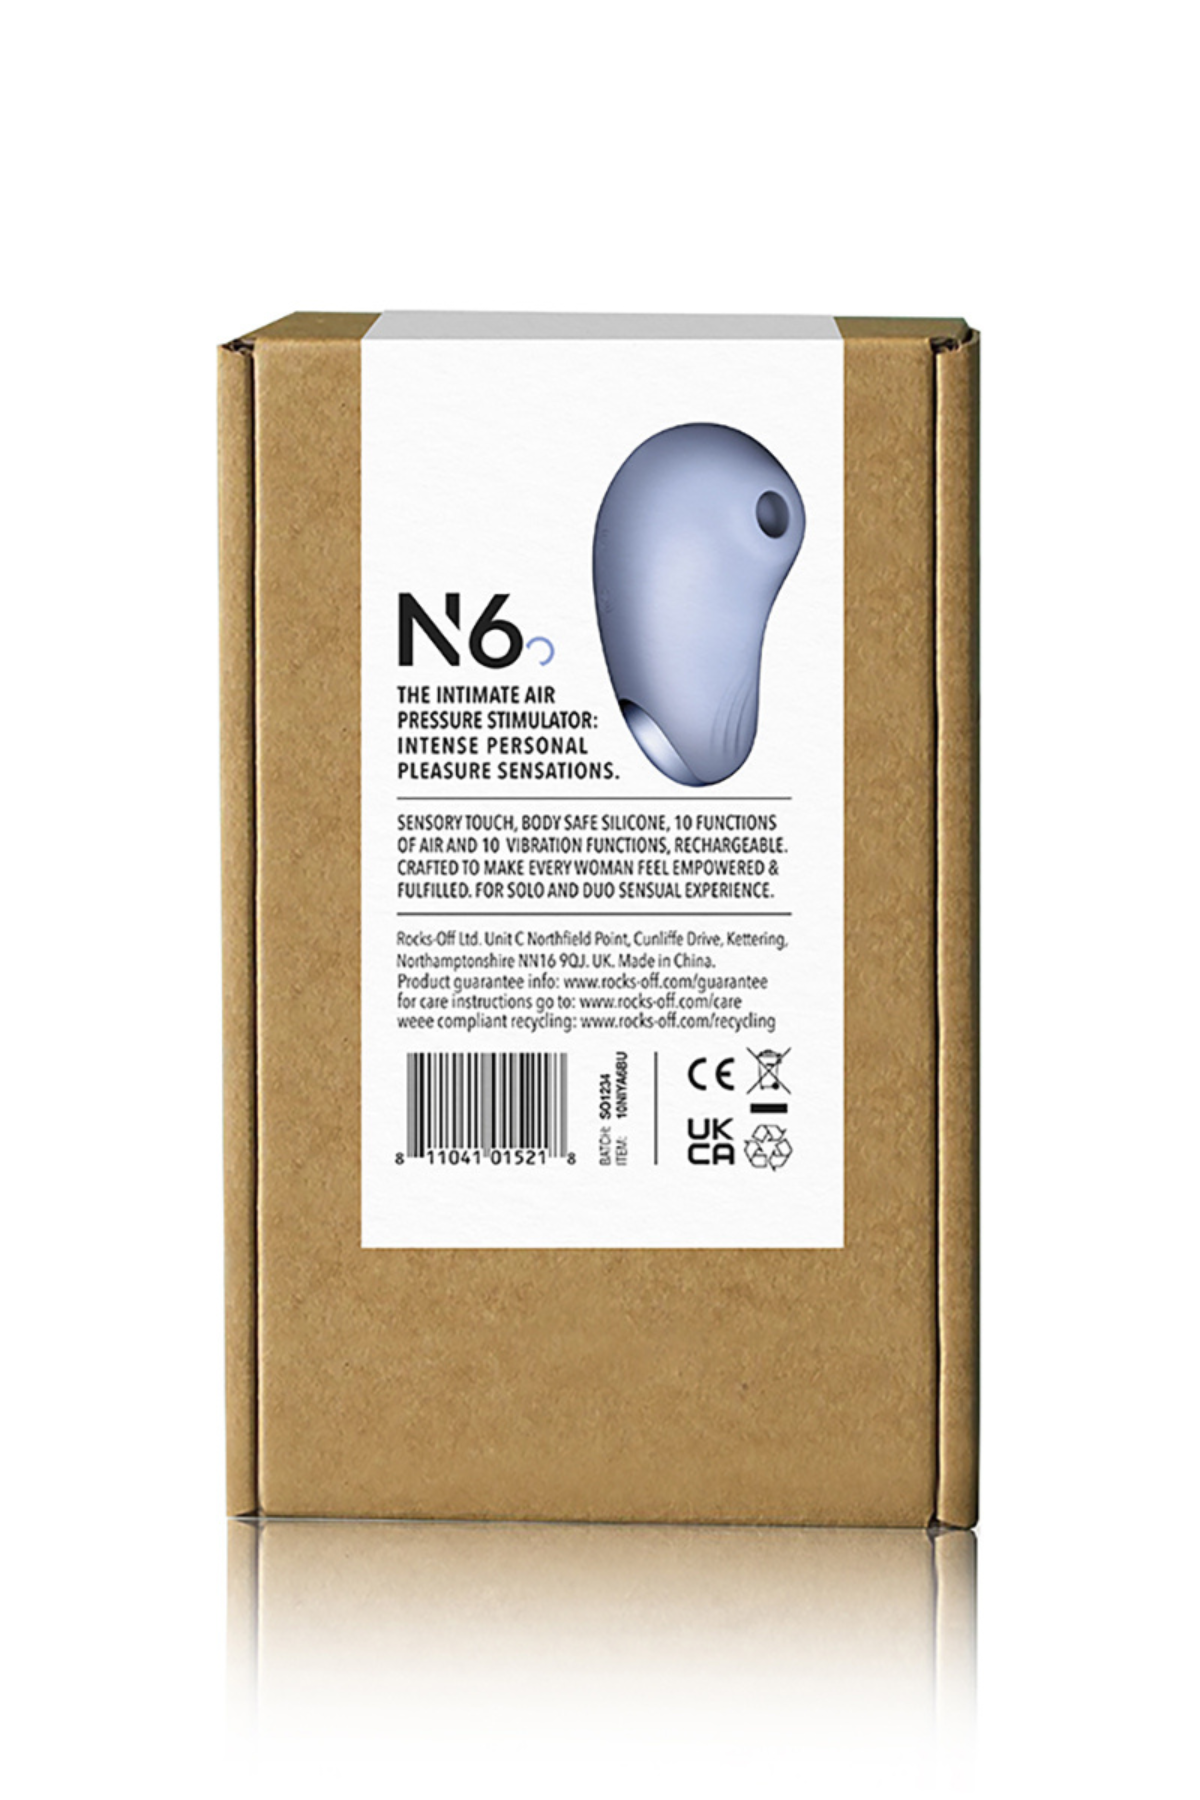 Niya N6 Air Stimulator Box Back | Matilda's